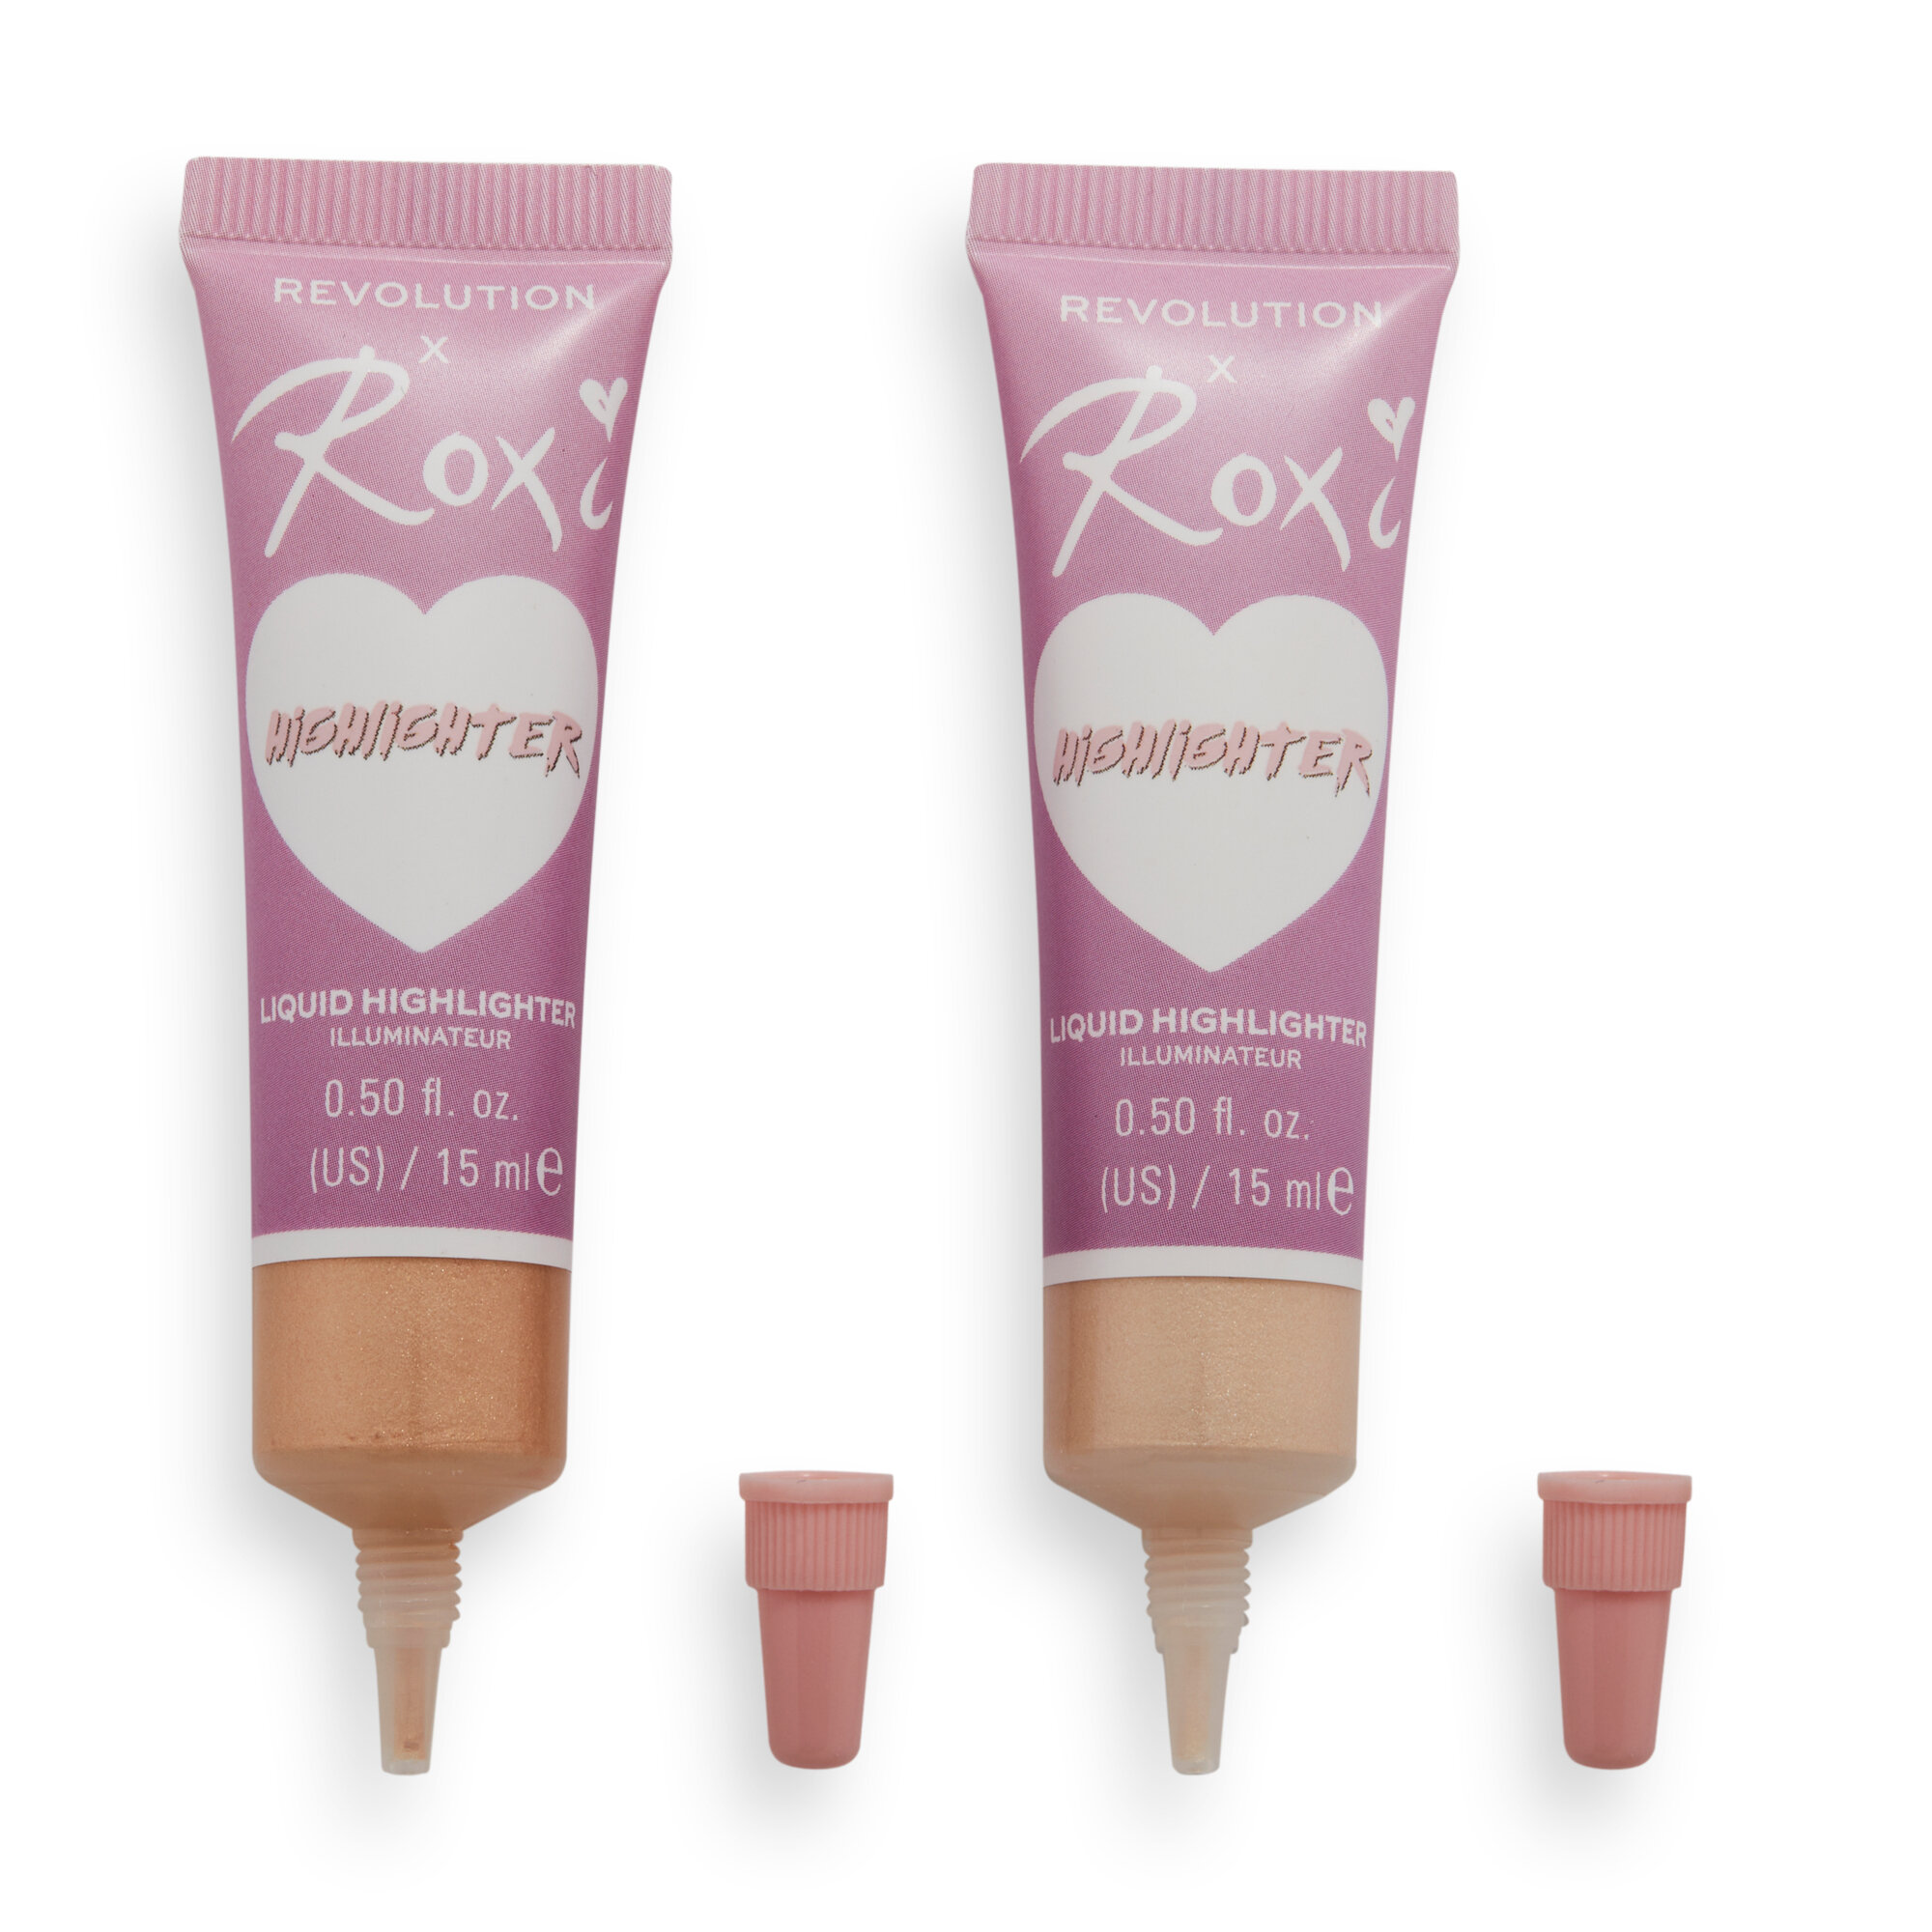 Makeup Revolution X Roxi Cherry Blossom Liquid Highlighter Duo